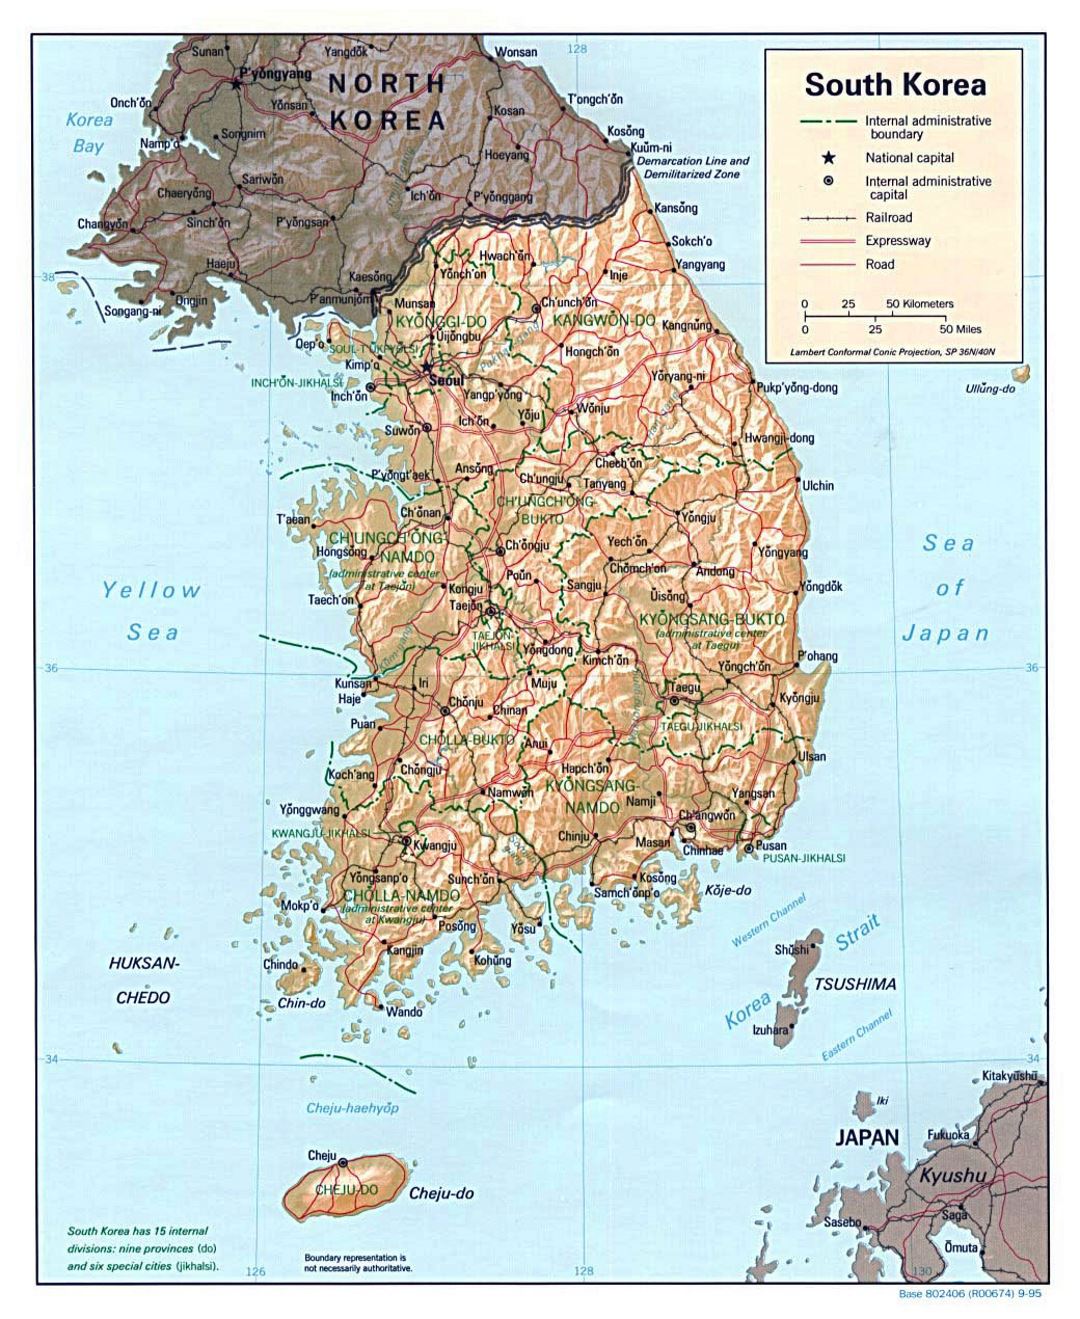 Detallado mapa político y administrativo de Corea del Sur con relieve, carreteras, ferrocarriles y principales ciudades - 1995